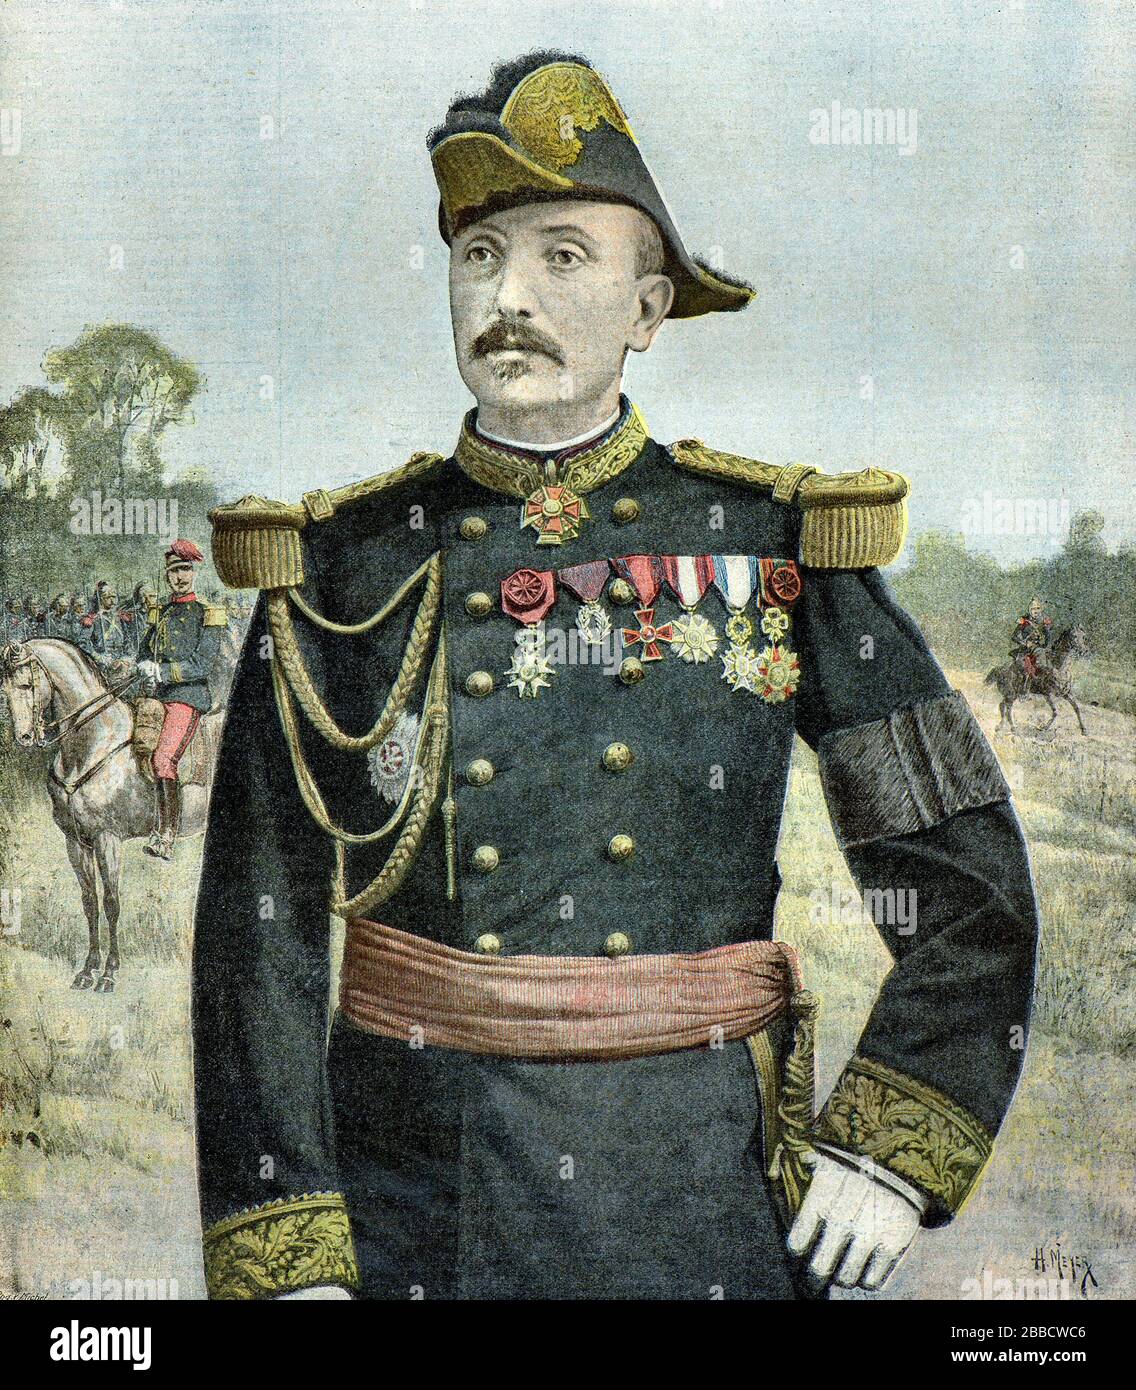 Meyer Henri ( 1841 - 1899 ) - Ritratto del generale Raoul le Mouton de Boisdeffre (1839 - 1919) Capo dello Stato maggiore dell'esercito francese - Collezione privata Foto Stock